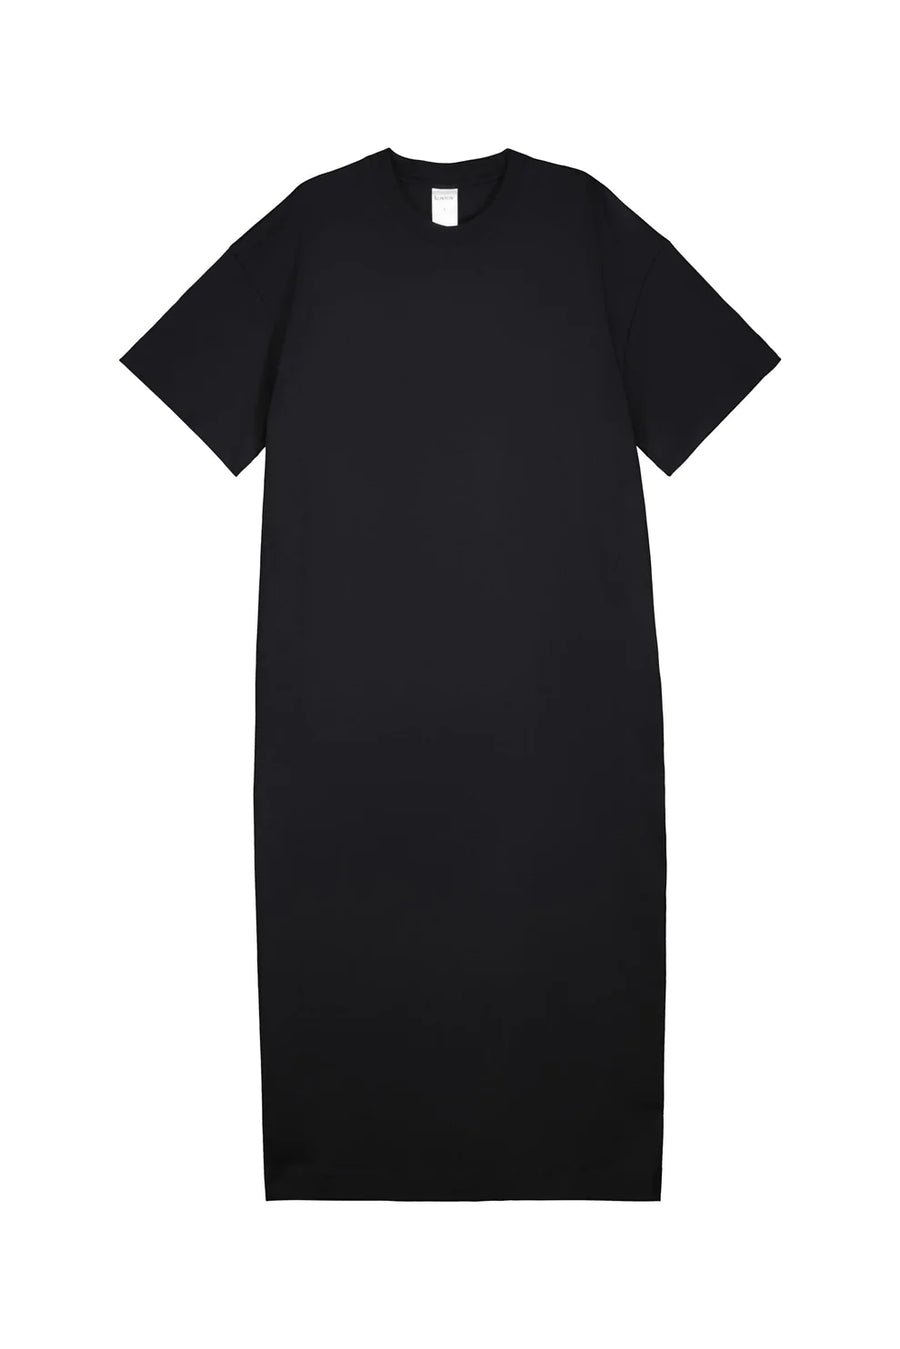 Boxy T-Shirt Dress in Black by Kowtow-Idlewild